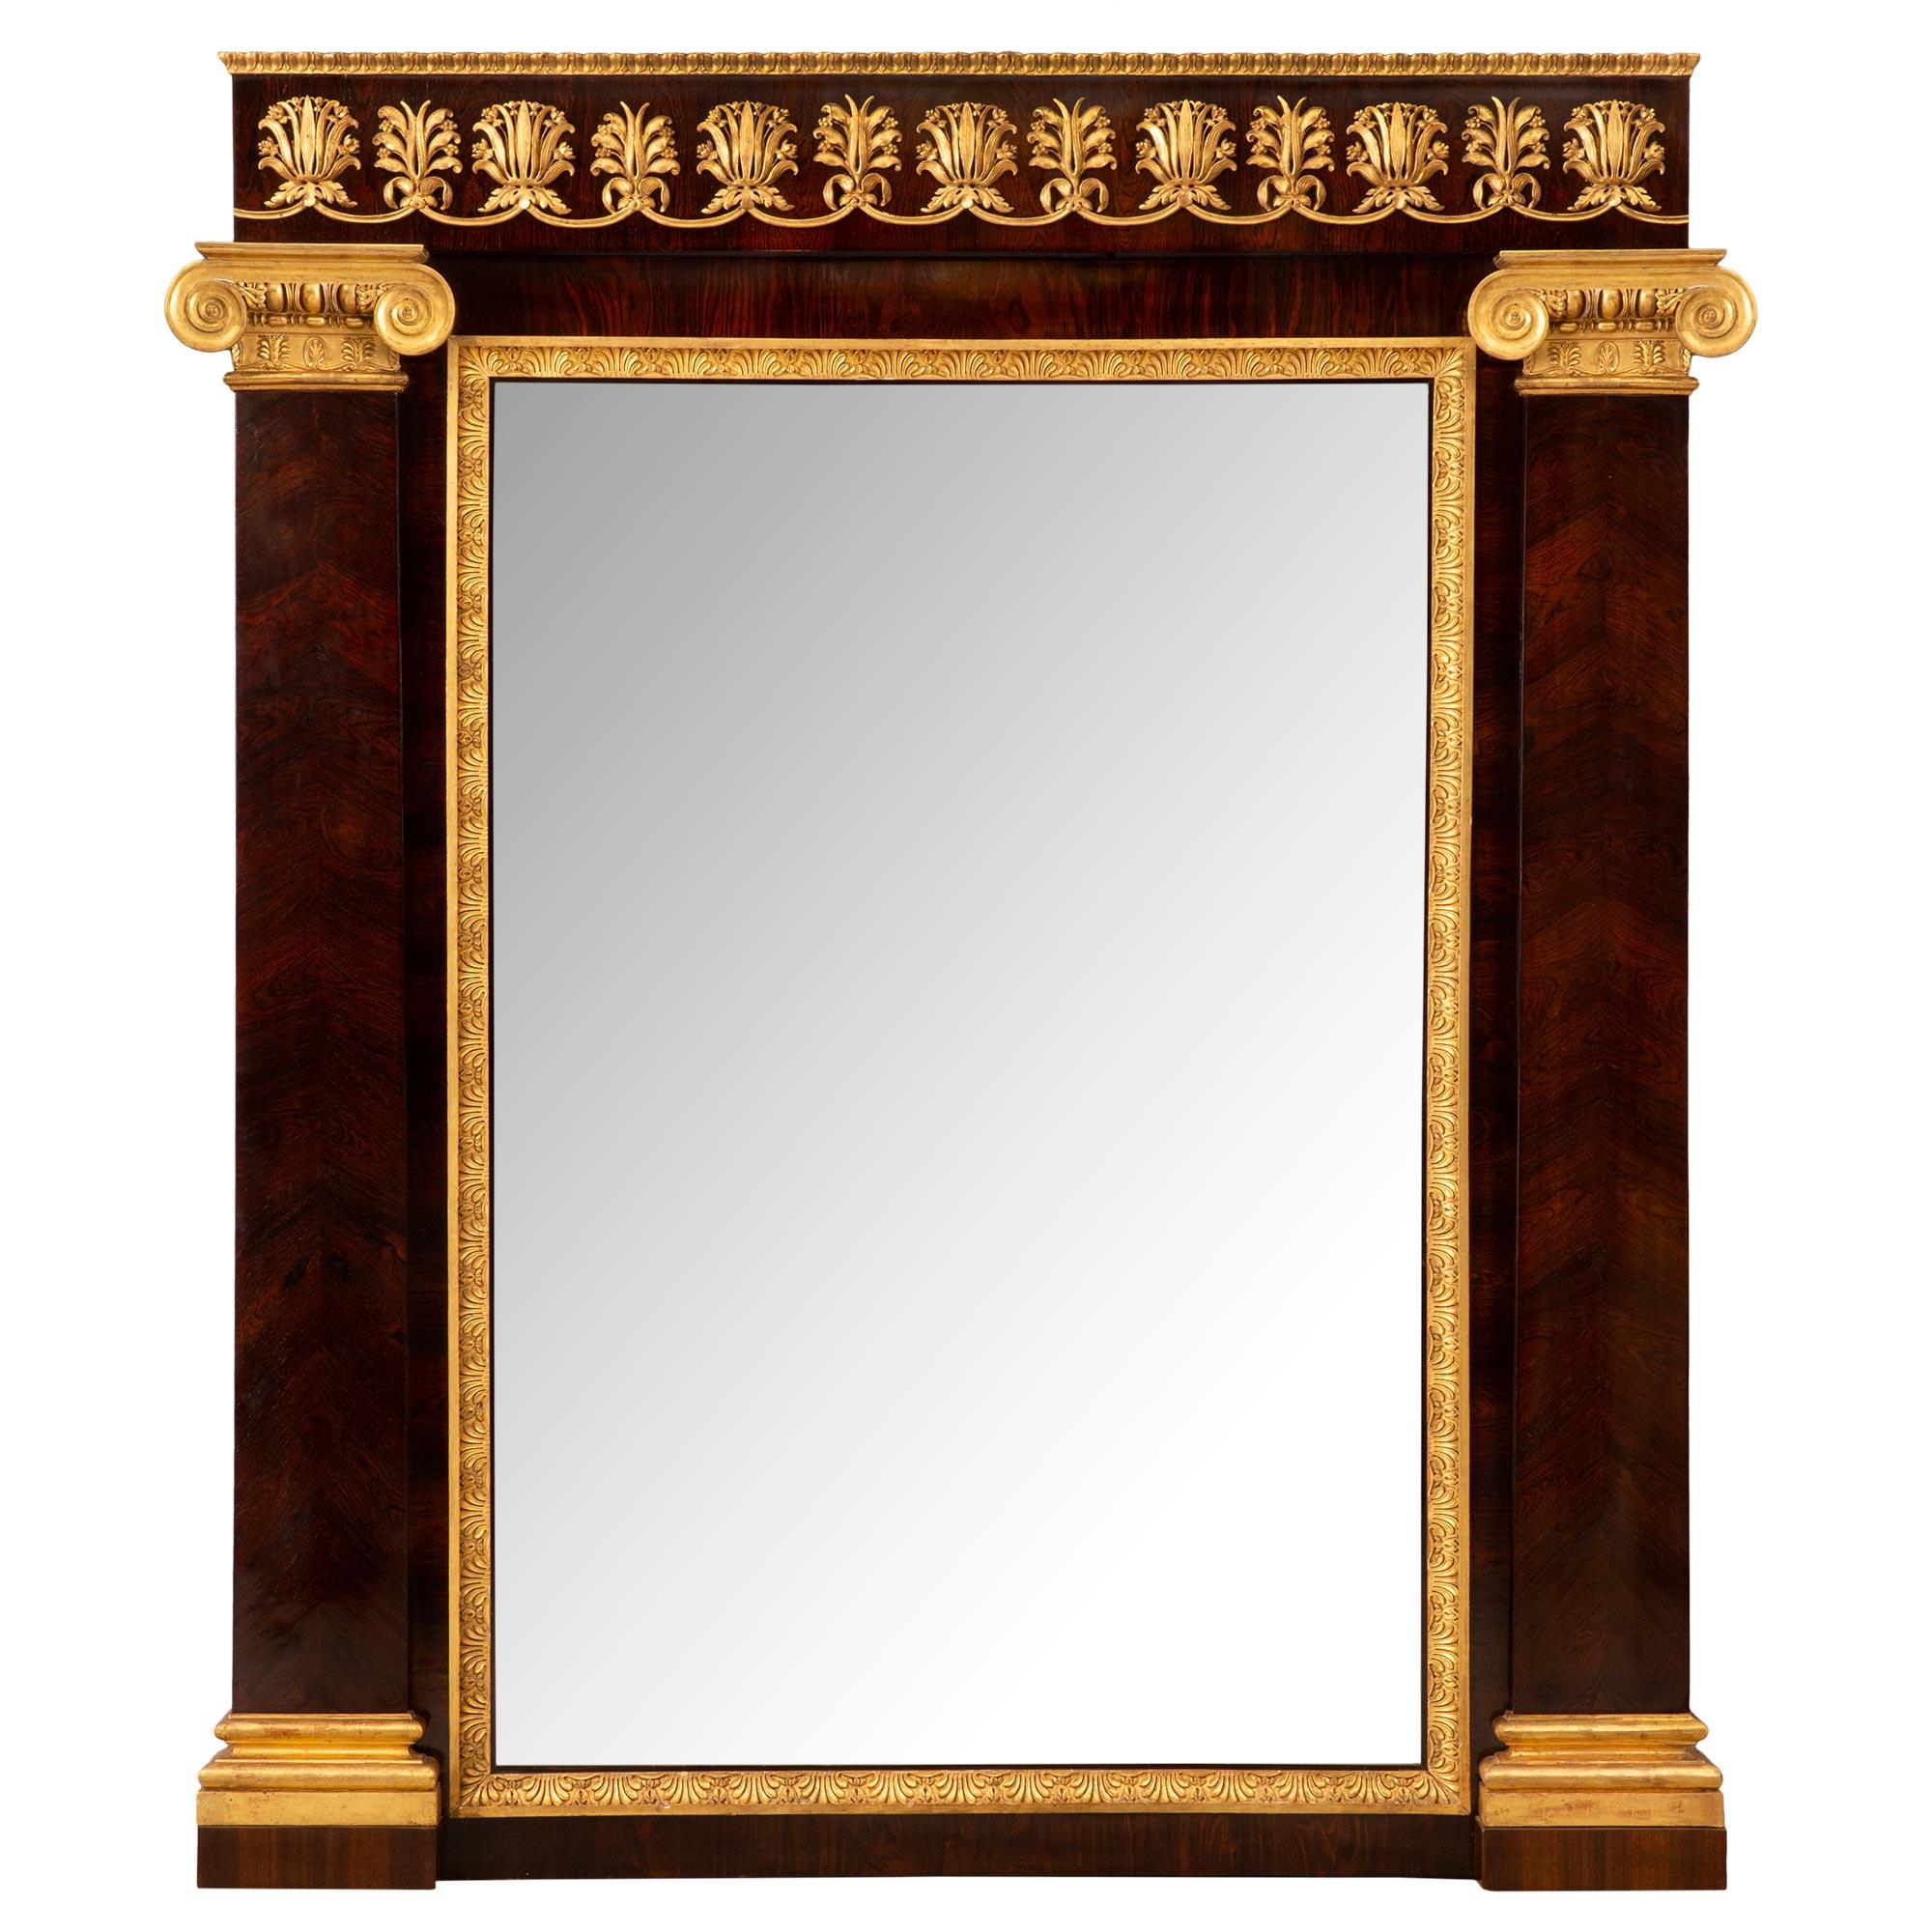 Ein schöner und hochwertiger italienischer Spiegel aus der Mitte des 19. Jahrhunderts im neoklassizistischen Stil aus Palisander und Goldholz. Die Spiegelplatte ist in ein wunderschönes und äußerst dekoratives Band aus gesprenkeltem Goldholz mit